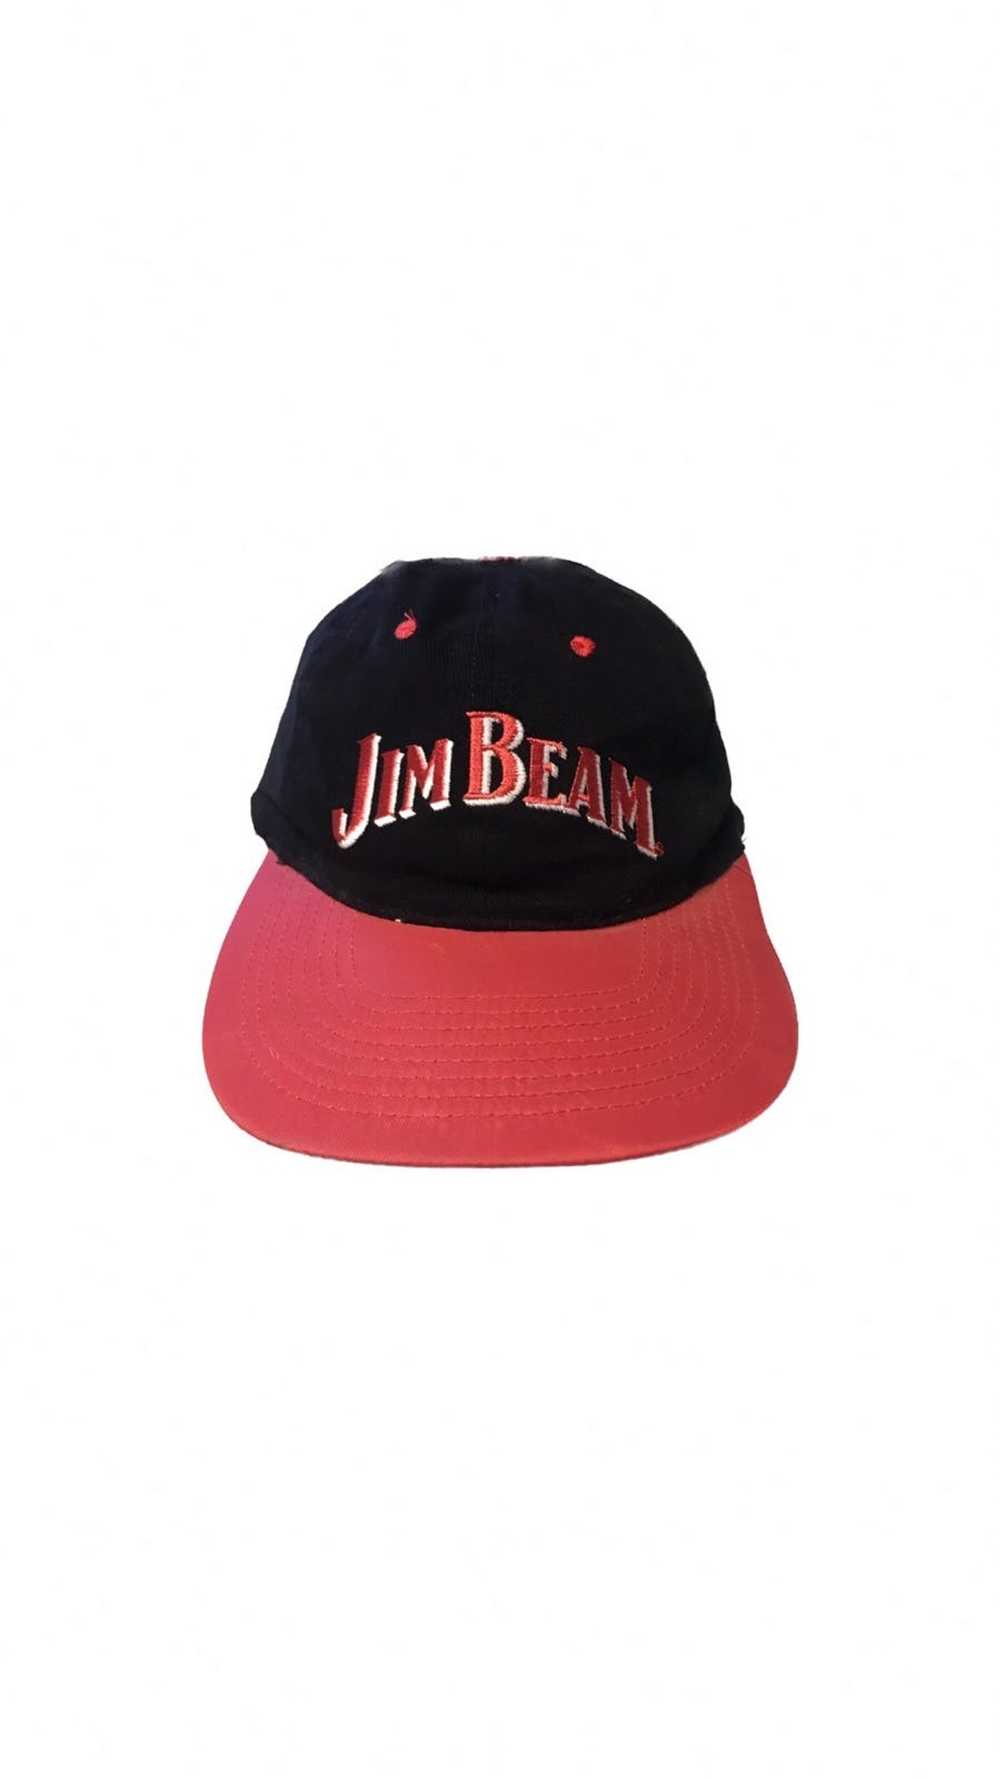 Vintage Vintage Jim Beam Hat - image 1